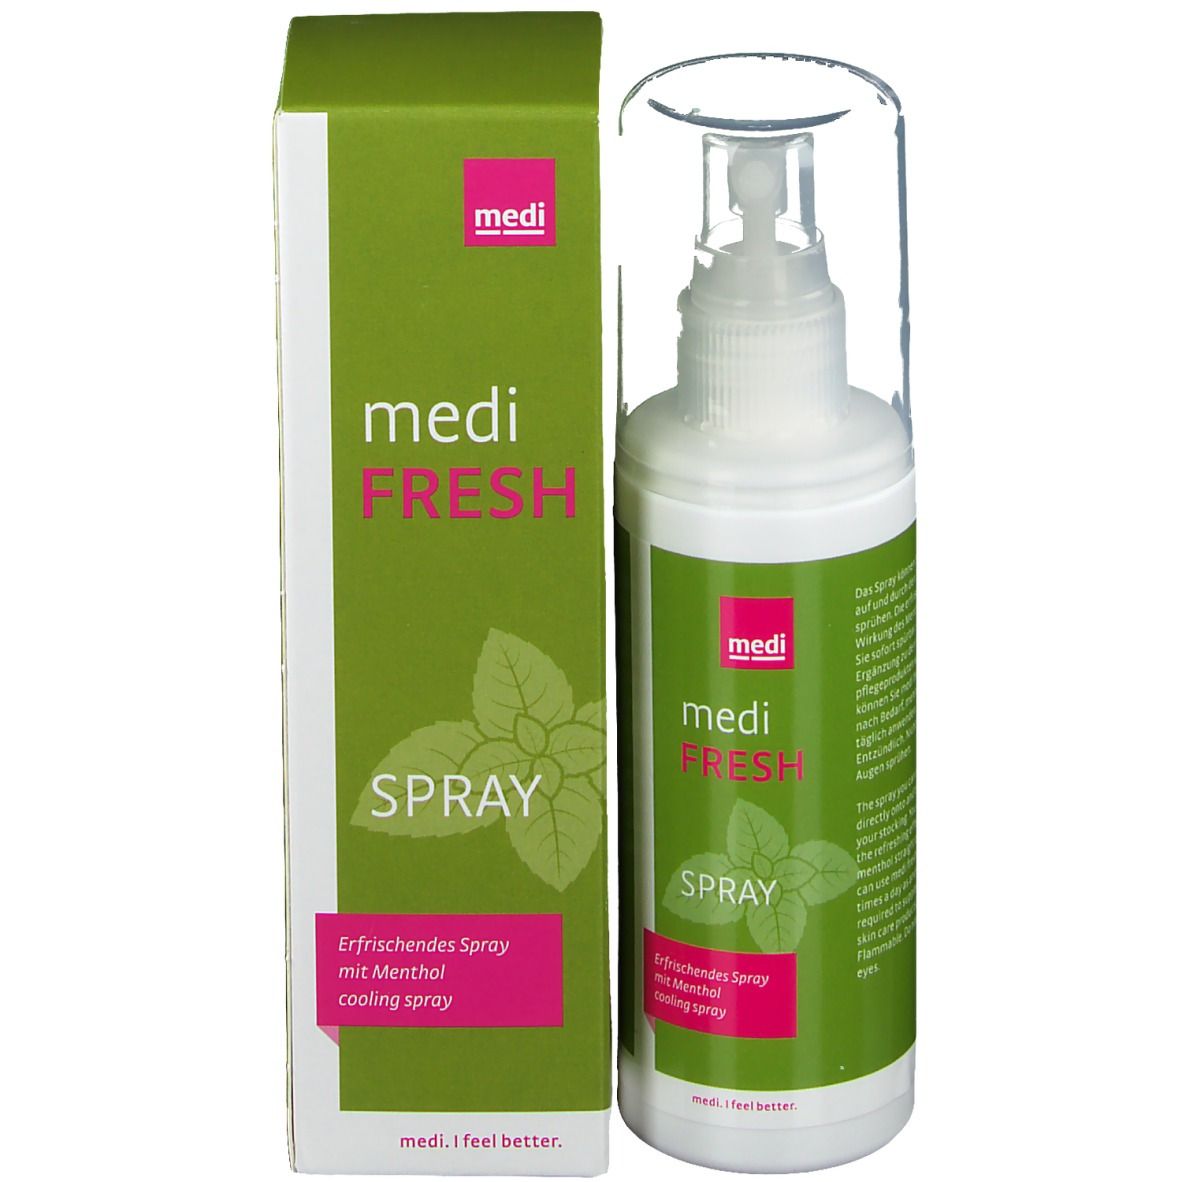 medi fresh spray